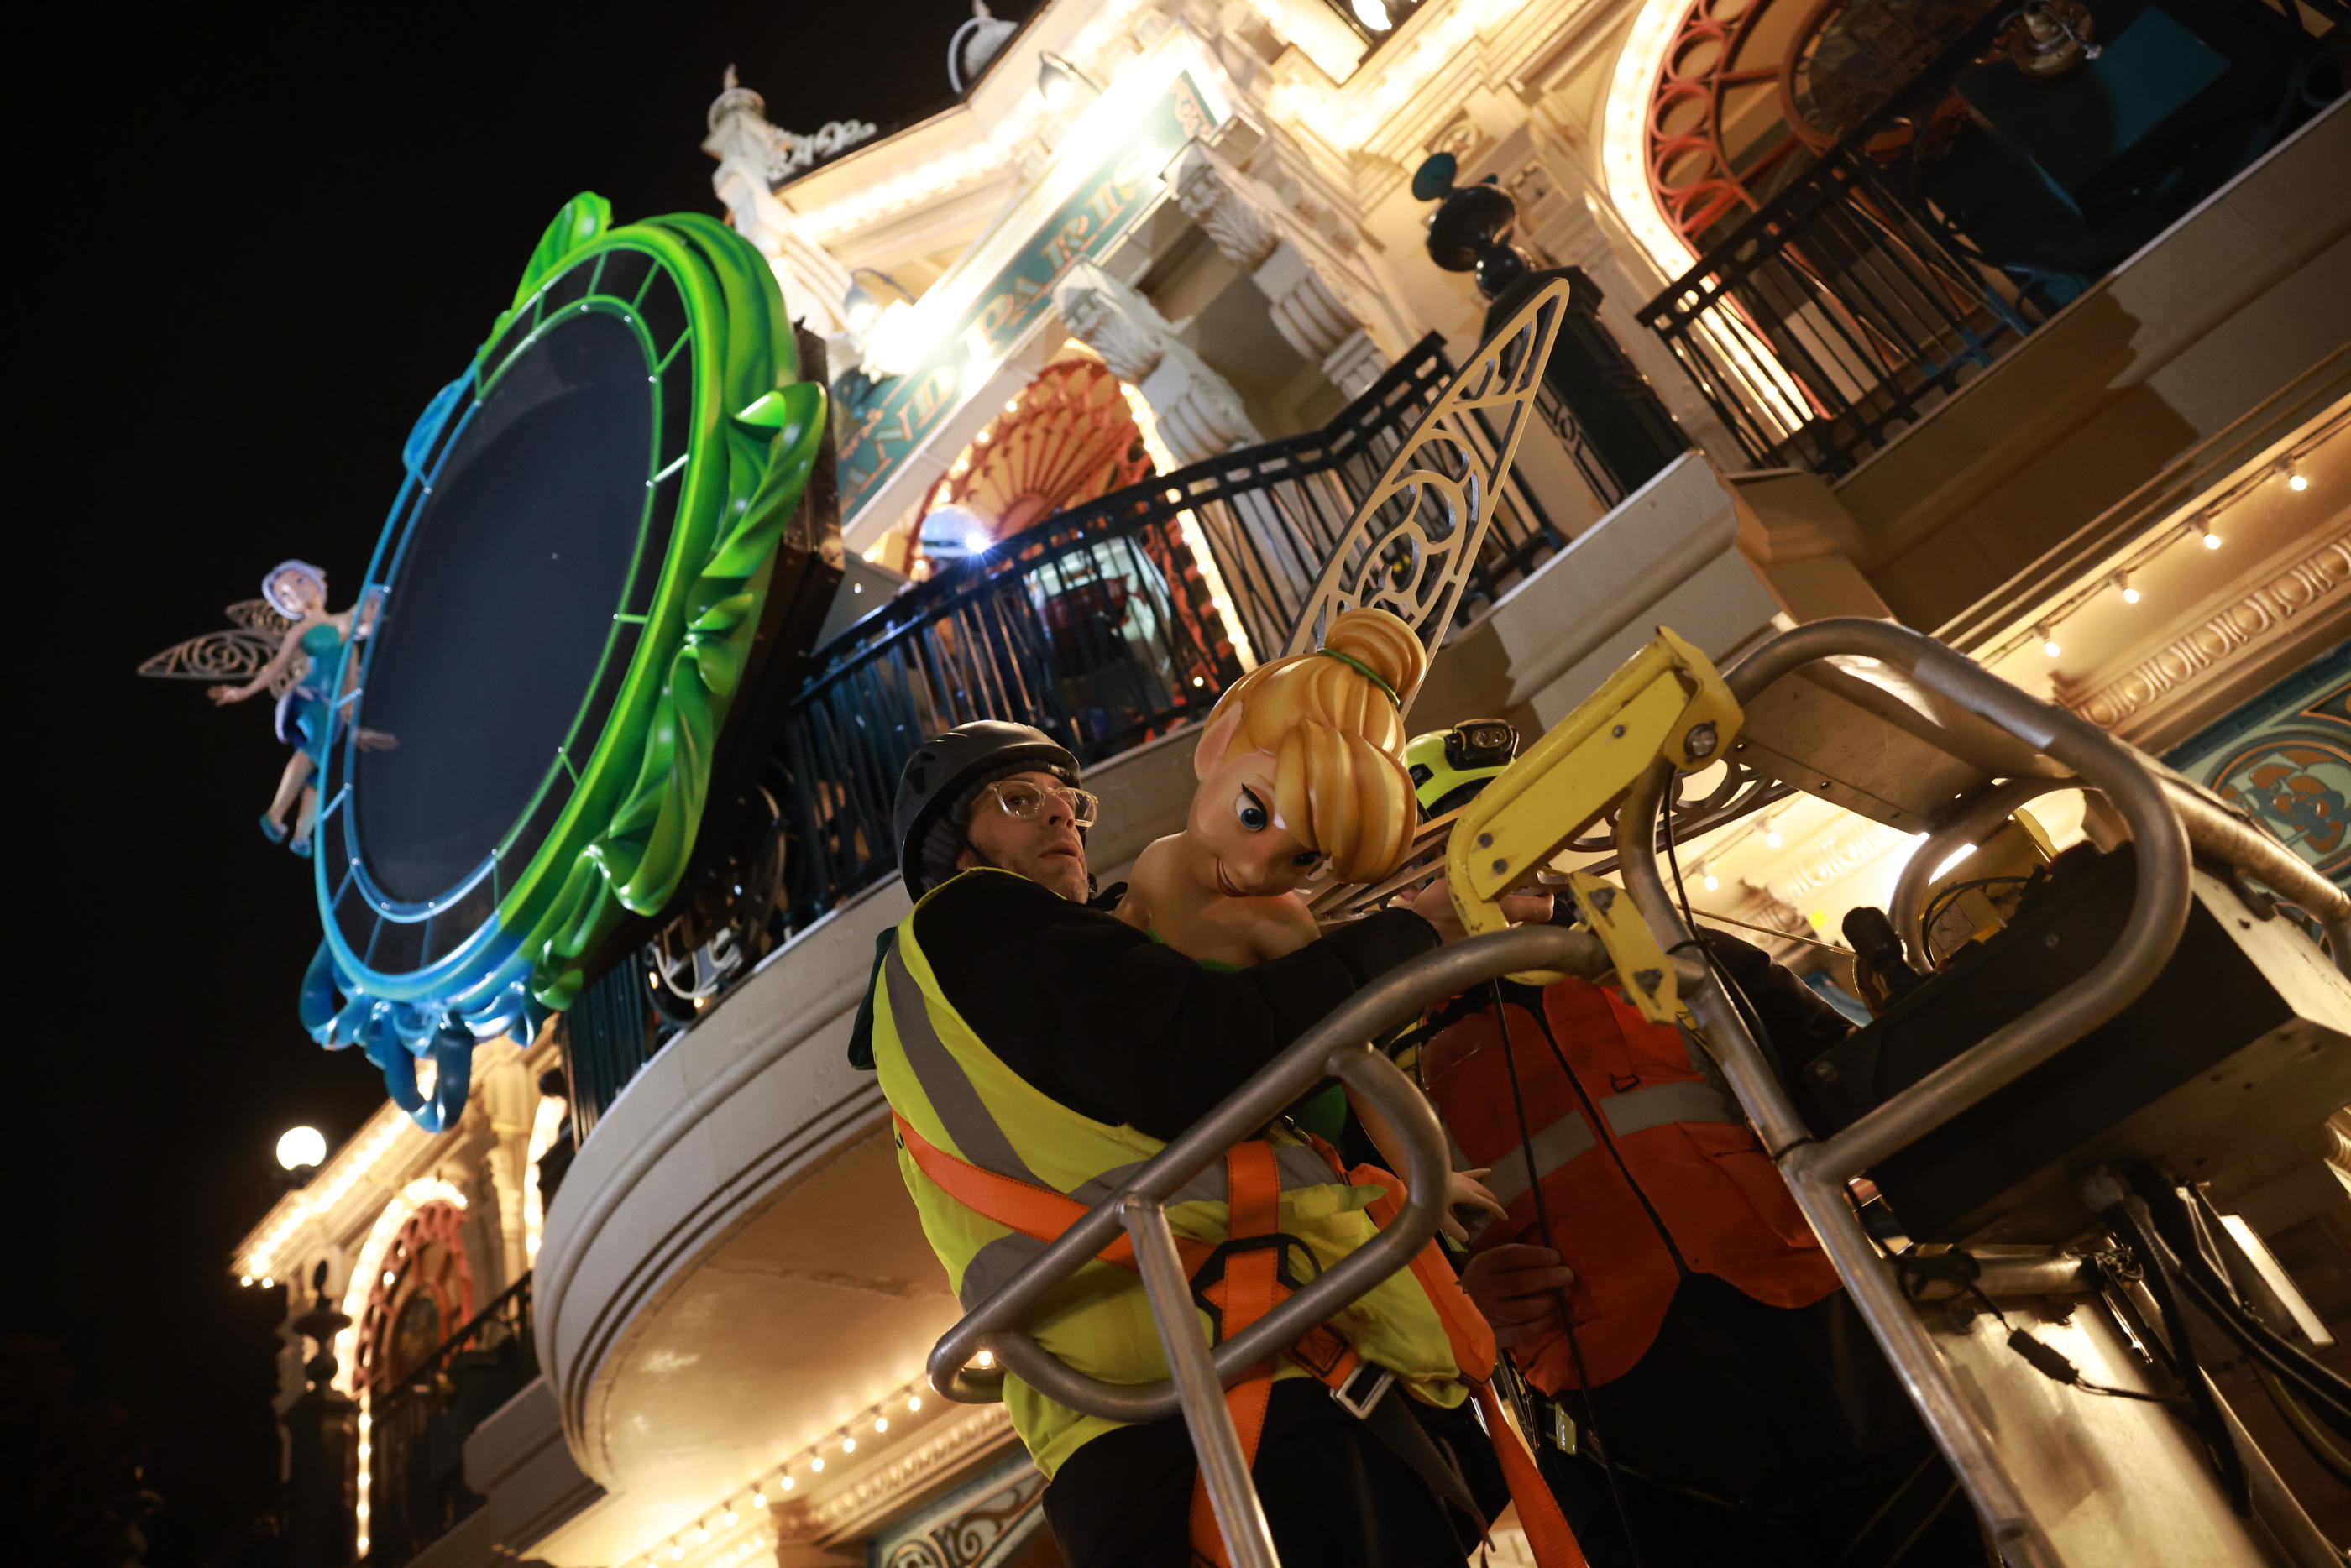 Les ouvriers qui travaillent la nuit à Disneyland Paris sont les garants de la réussite de la saison printanière qui sera marquée par des décors innovants. LP/Olivier Arandel